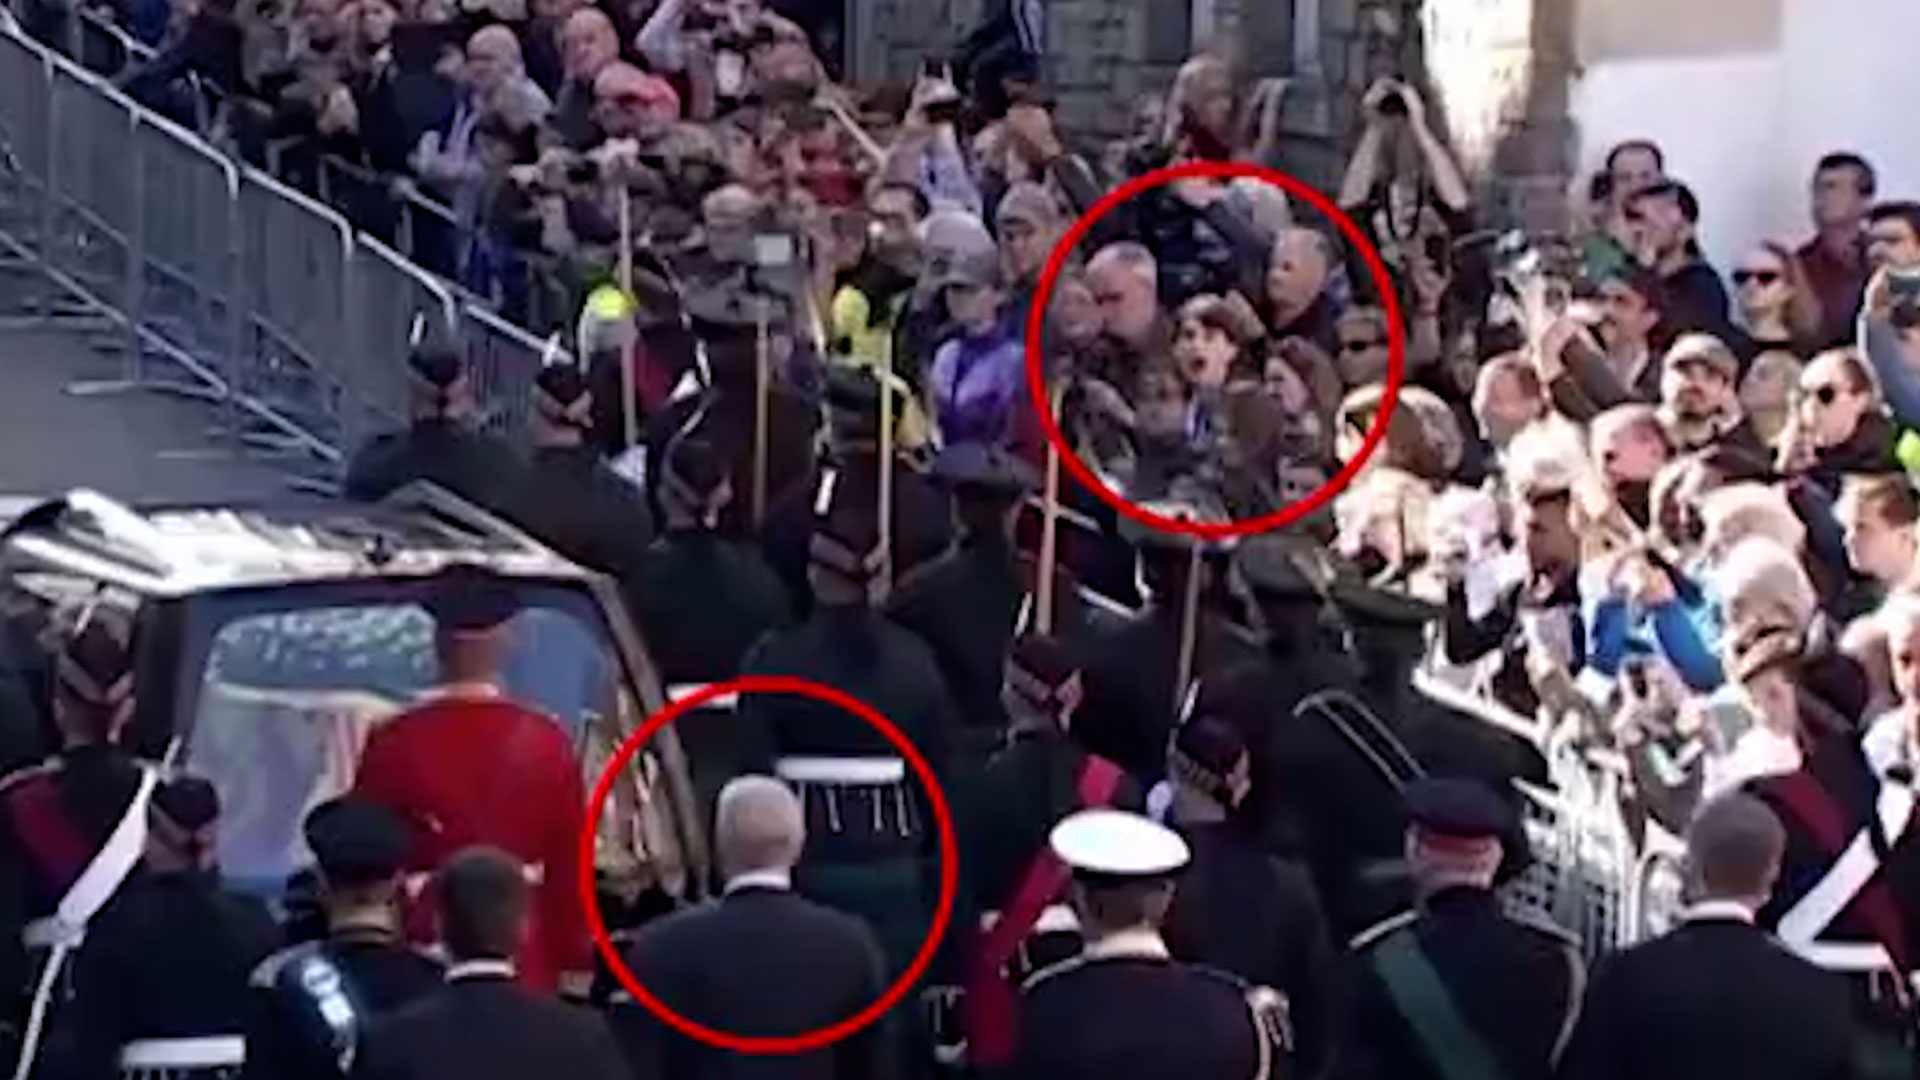 “¡Viejo enfermo!”: el momento en que arrestan a un joven que repudió al príncipe Andrew durante la procesión de la reina Isabel II